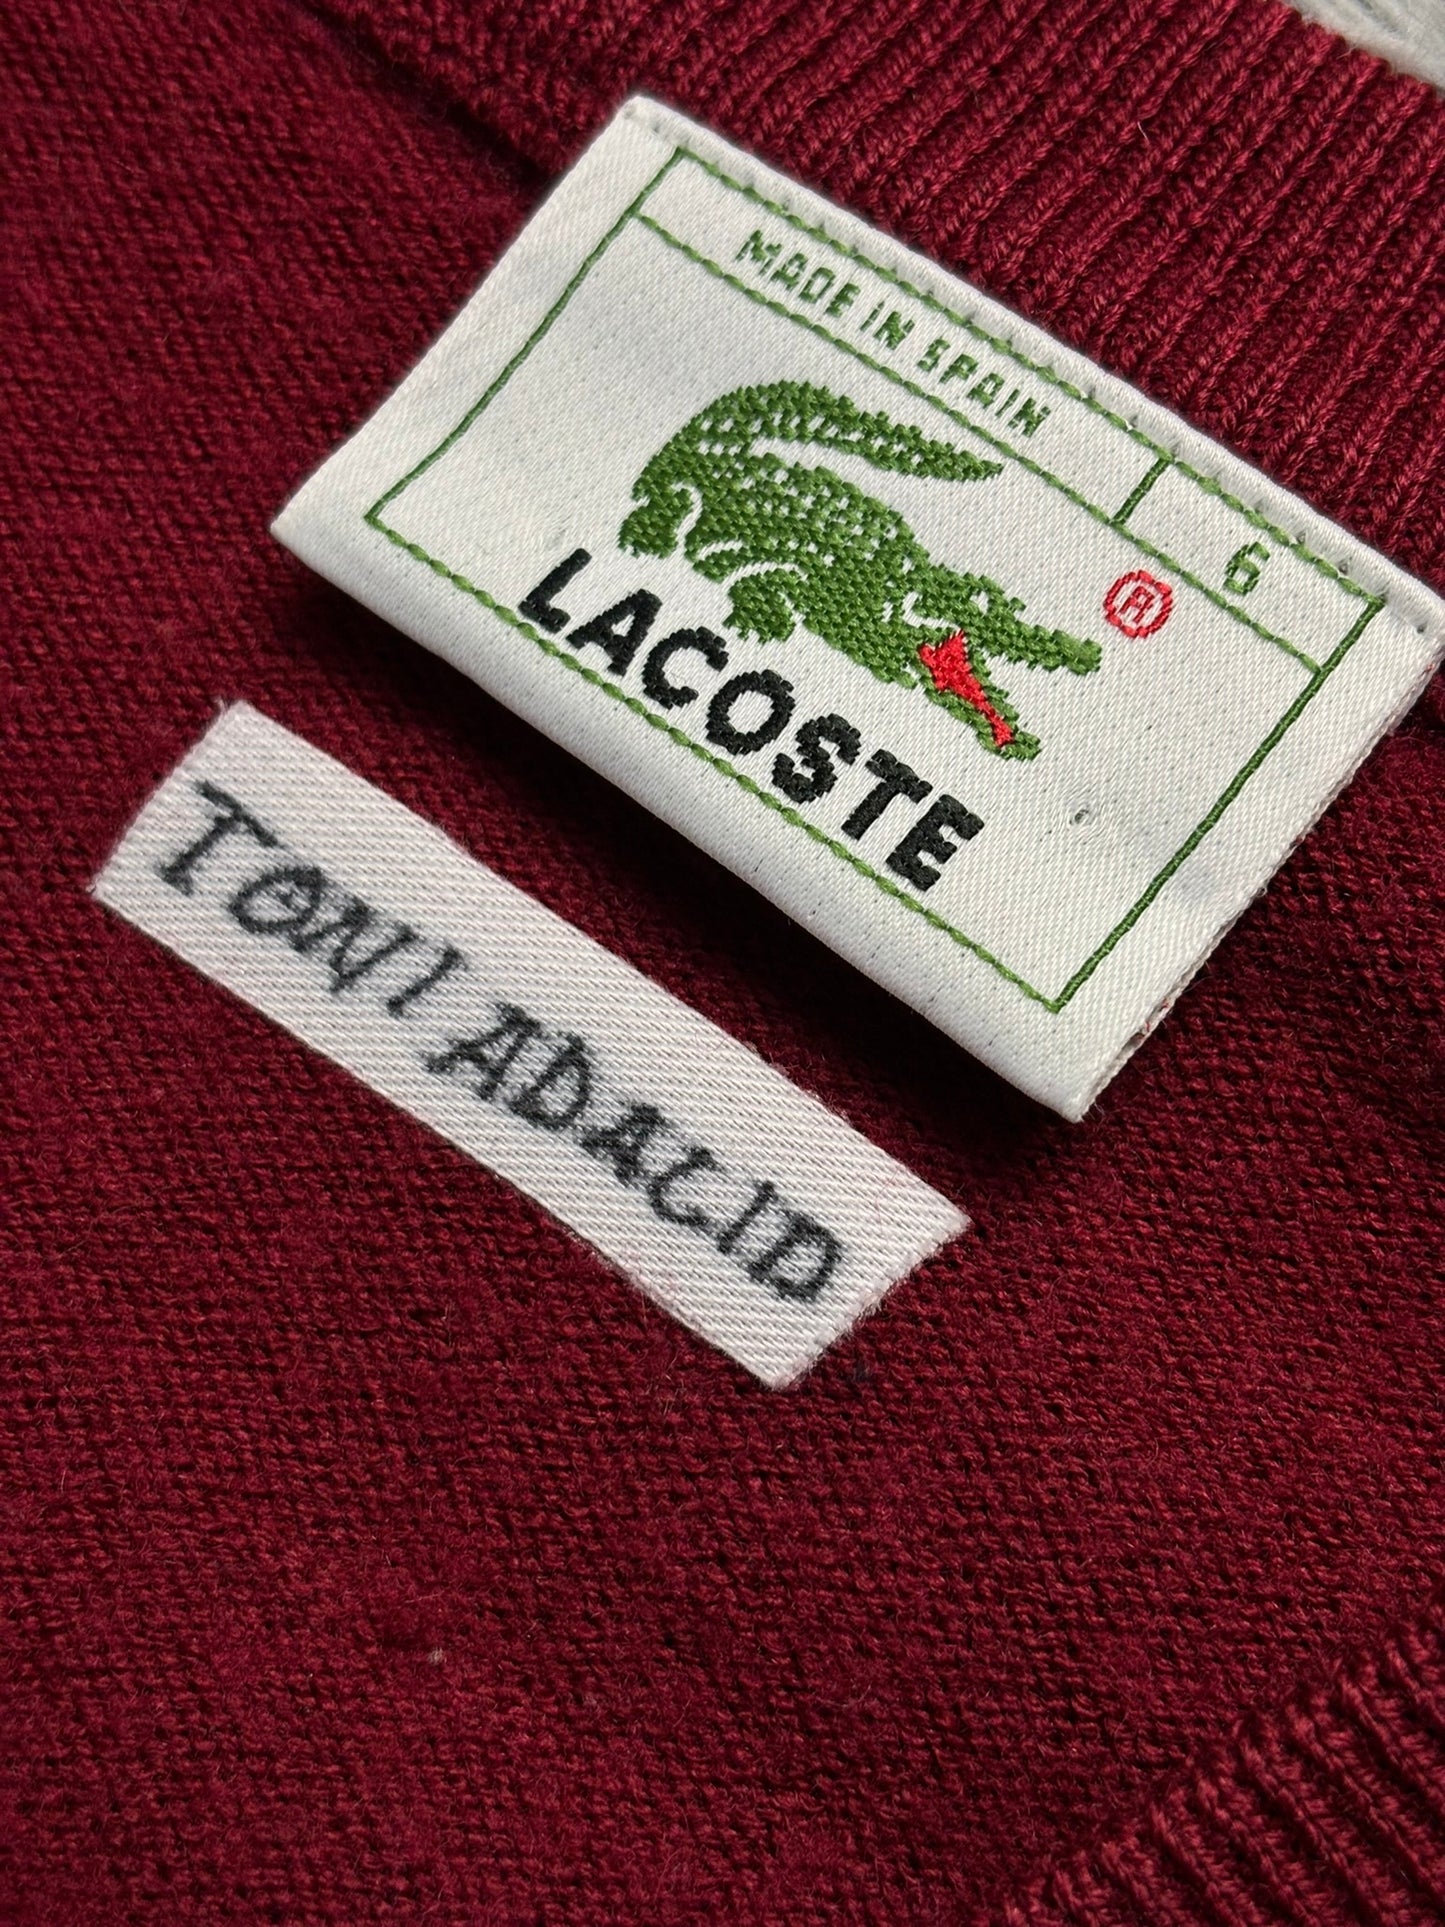 Jersey de pico Lacoste Spain vintage - Large